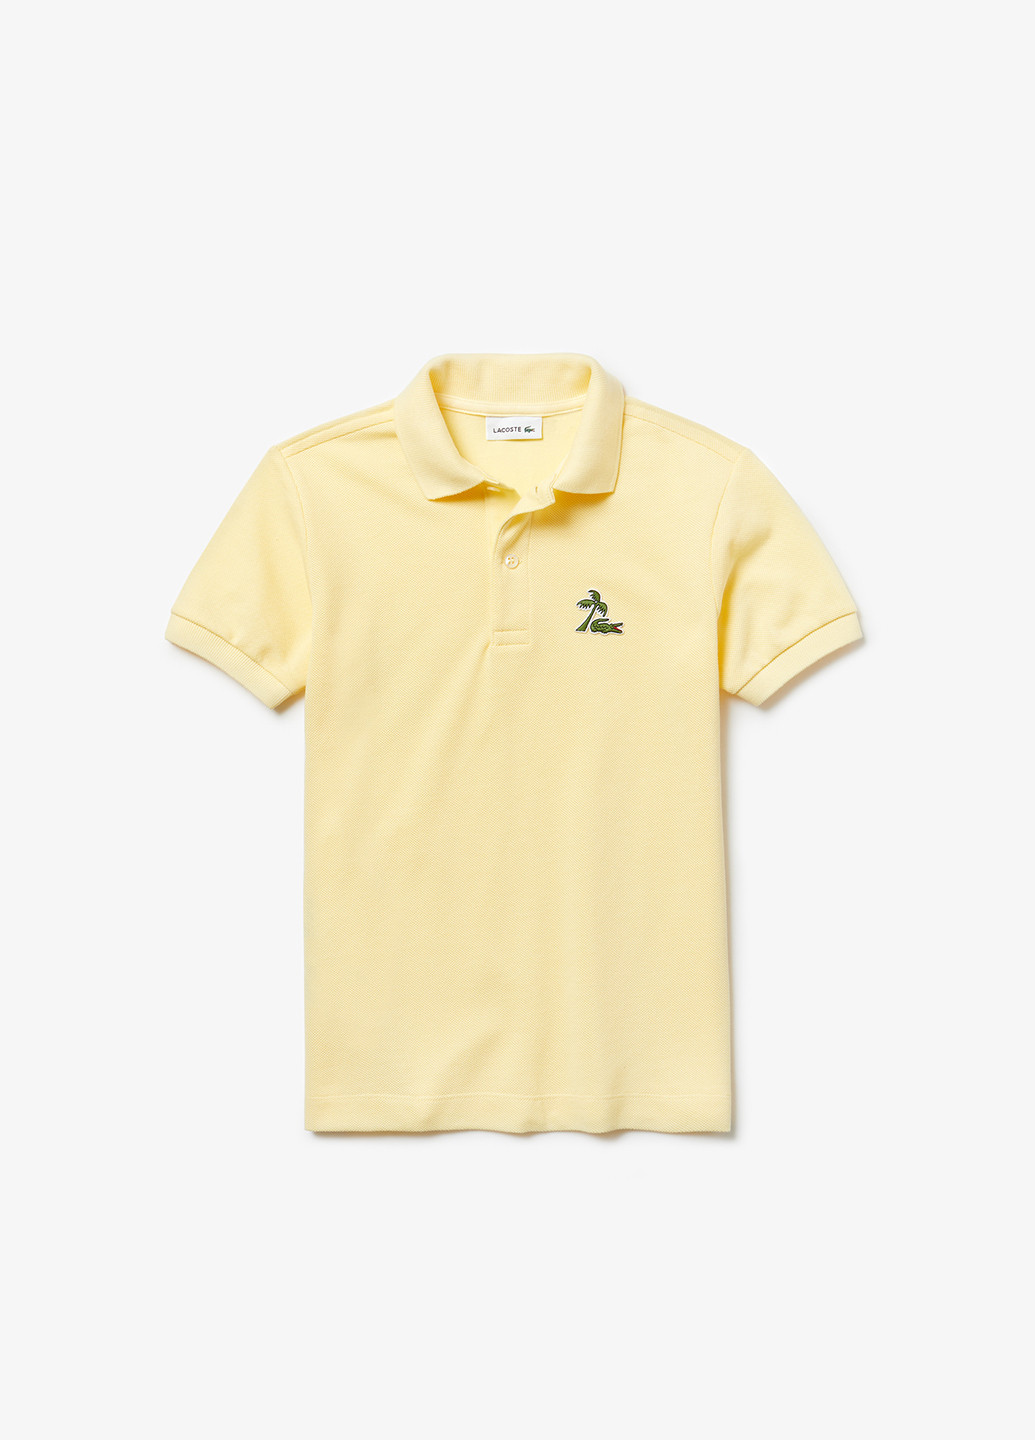 Желтая детская футболка-поло для мальчика Lacoste однотонная